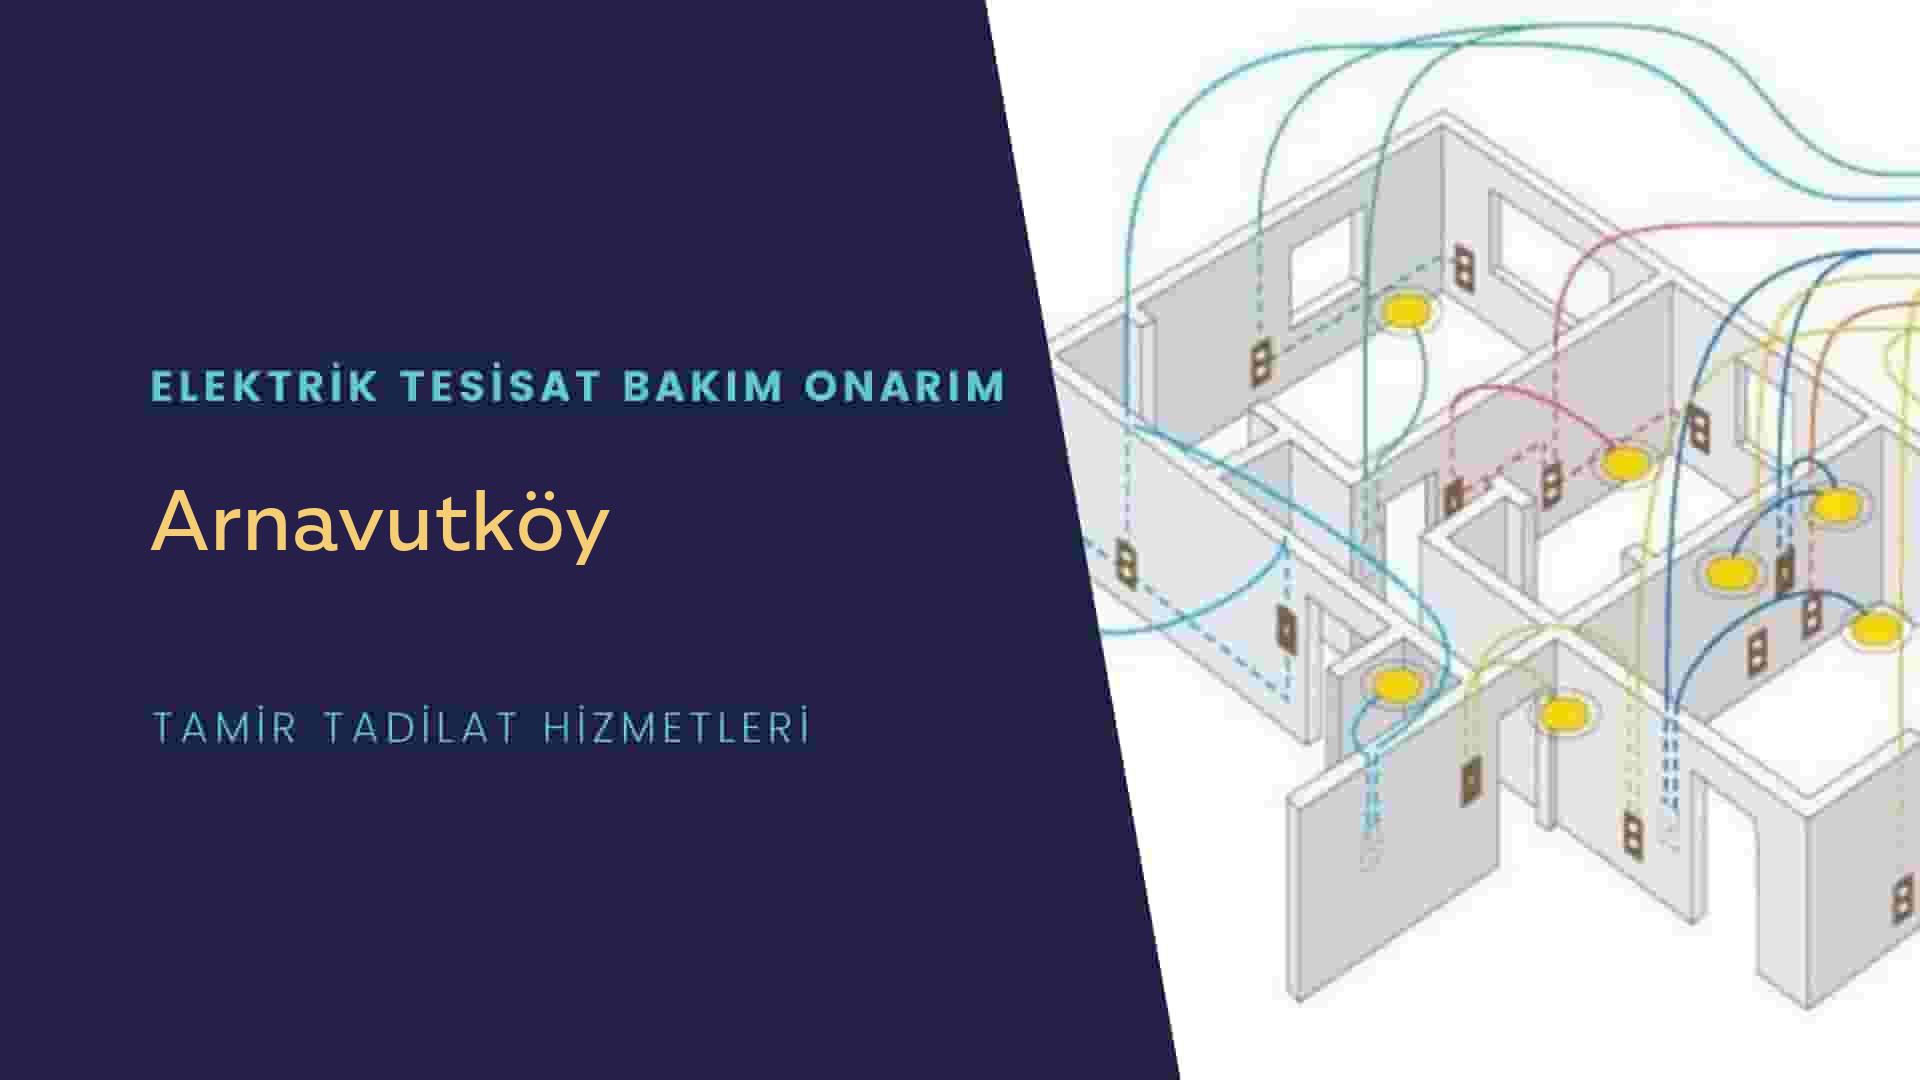 Arnavutköy'de elektrik tesisatı ustalarımı arıyorsunuz doğru adrestenizi Arnavutköy elektrik tesisatı ustalarımız 7/24 sizlere hizmet vermekten mutluluk duyar.